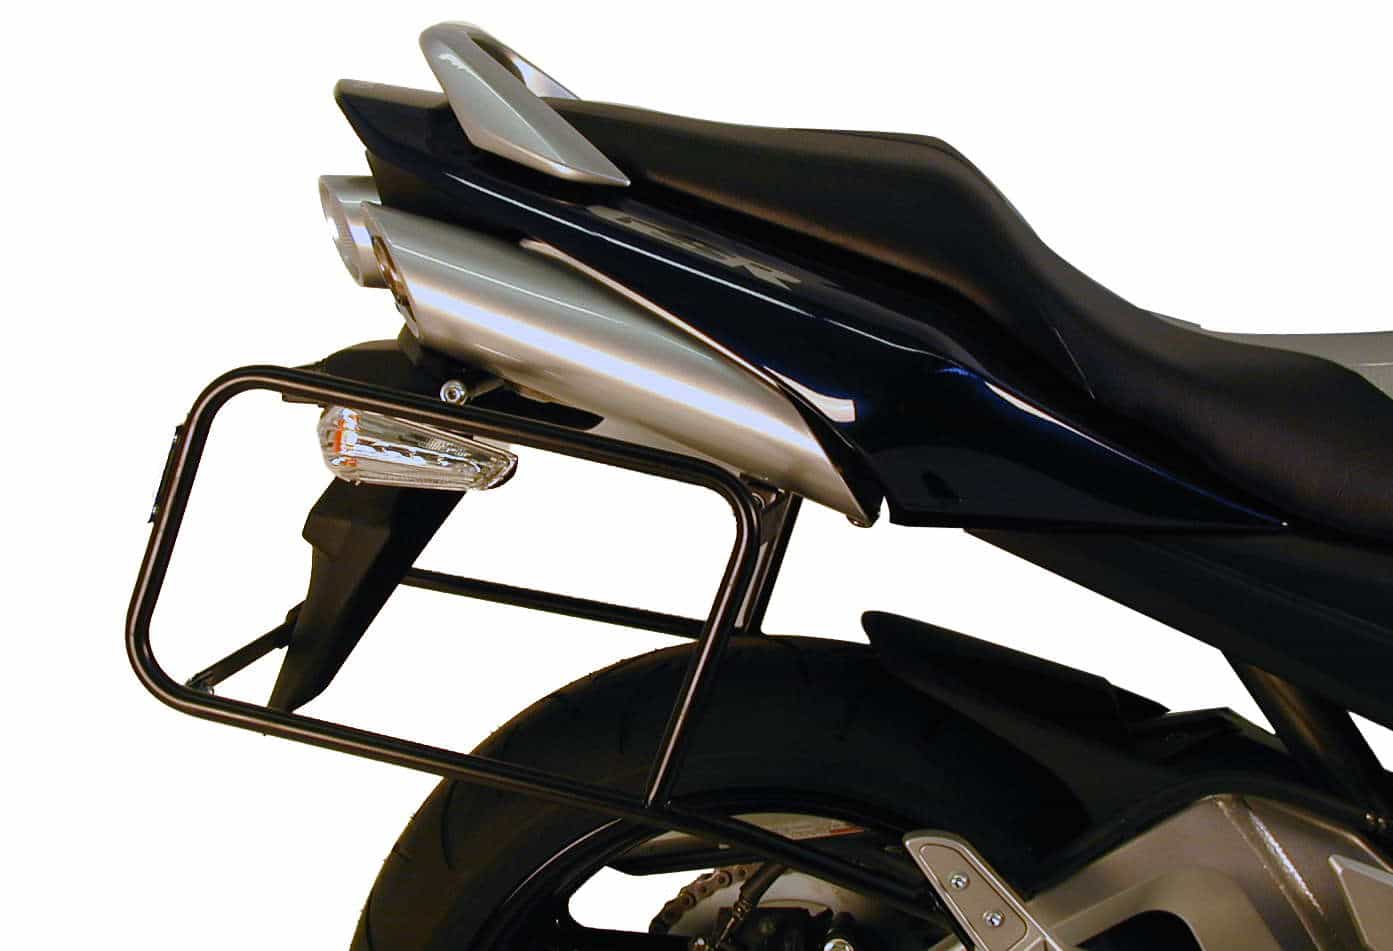 Sidecarrier permanent mounted black for Suzuki GSR 600 (2006-2011)